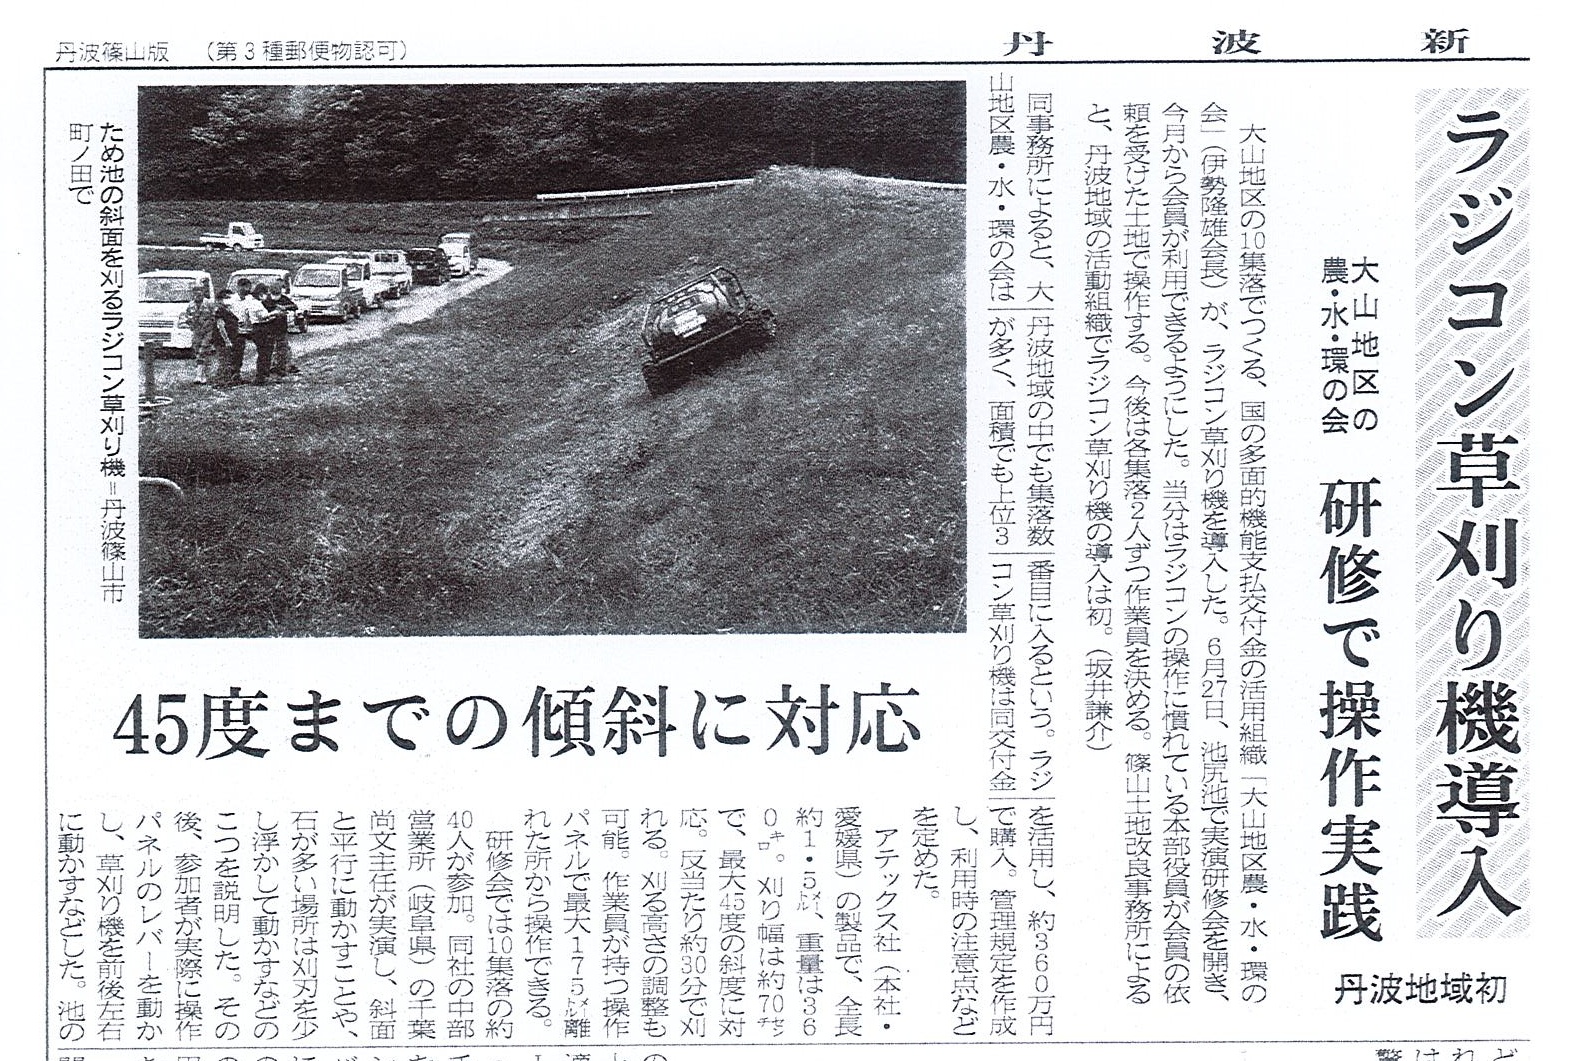 「ラジコン草刈り機導入」（大山地区農・水・環の会）の記事が丹波新聞に掲載されました。